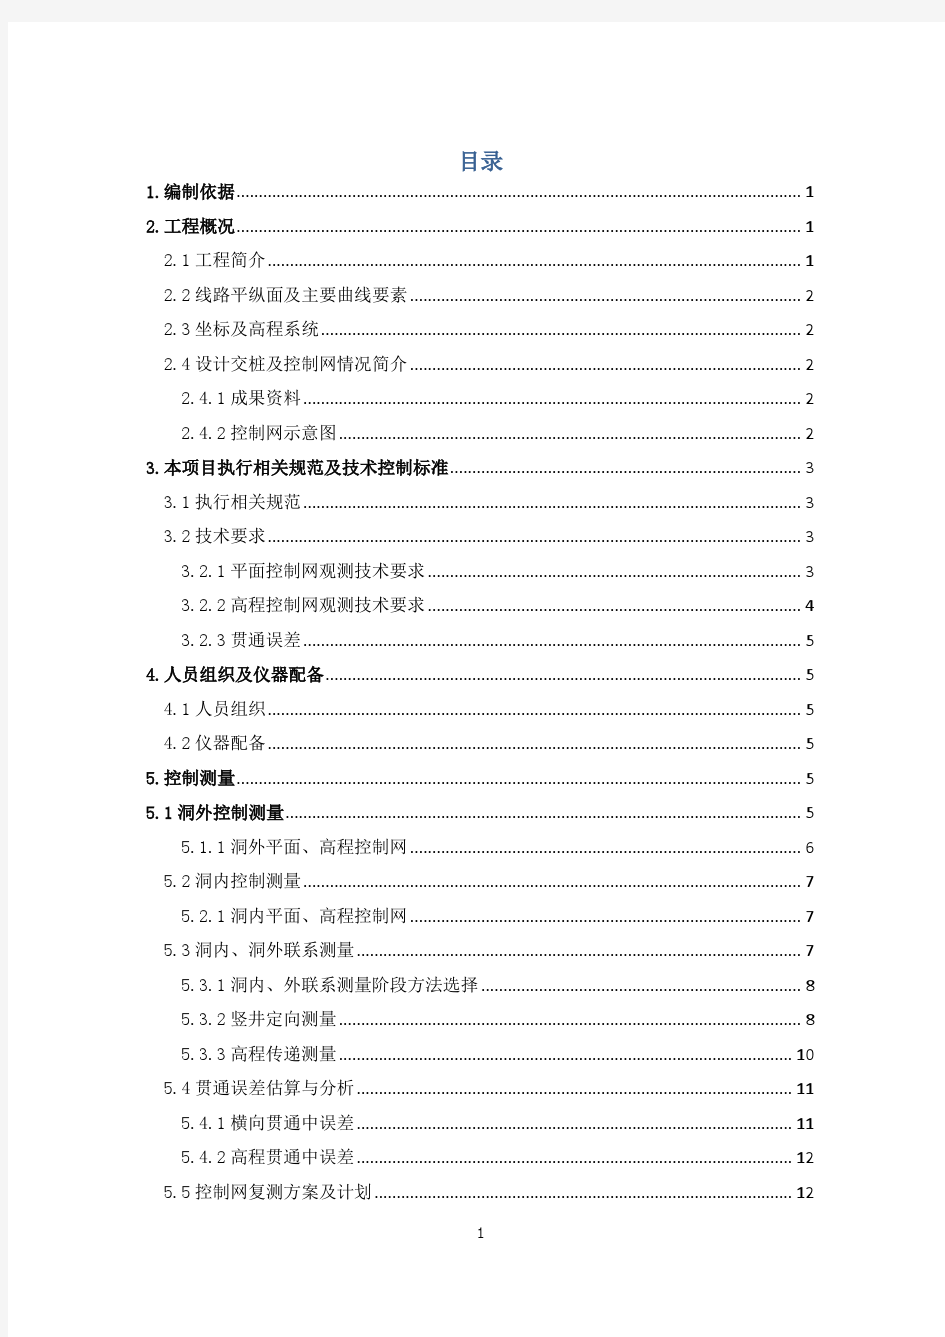 测量方案 2016-01-15北京